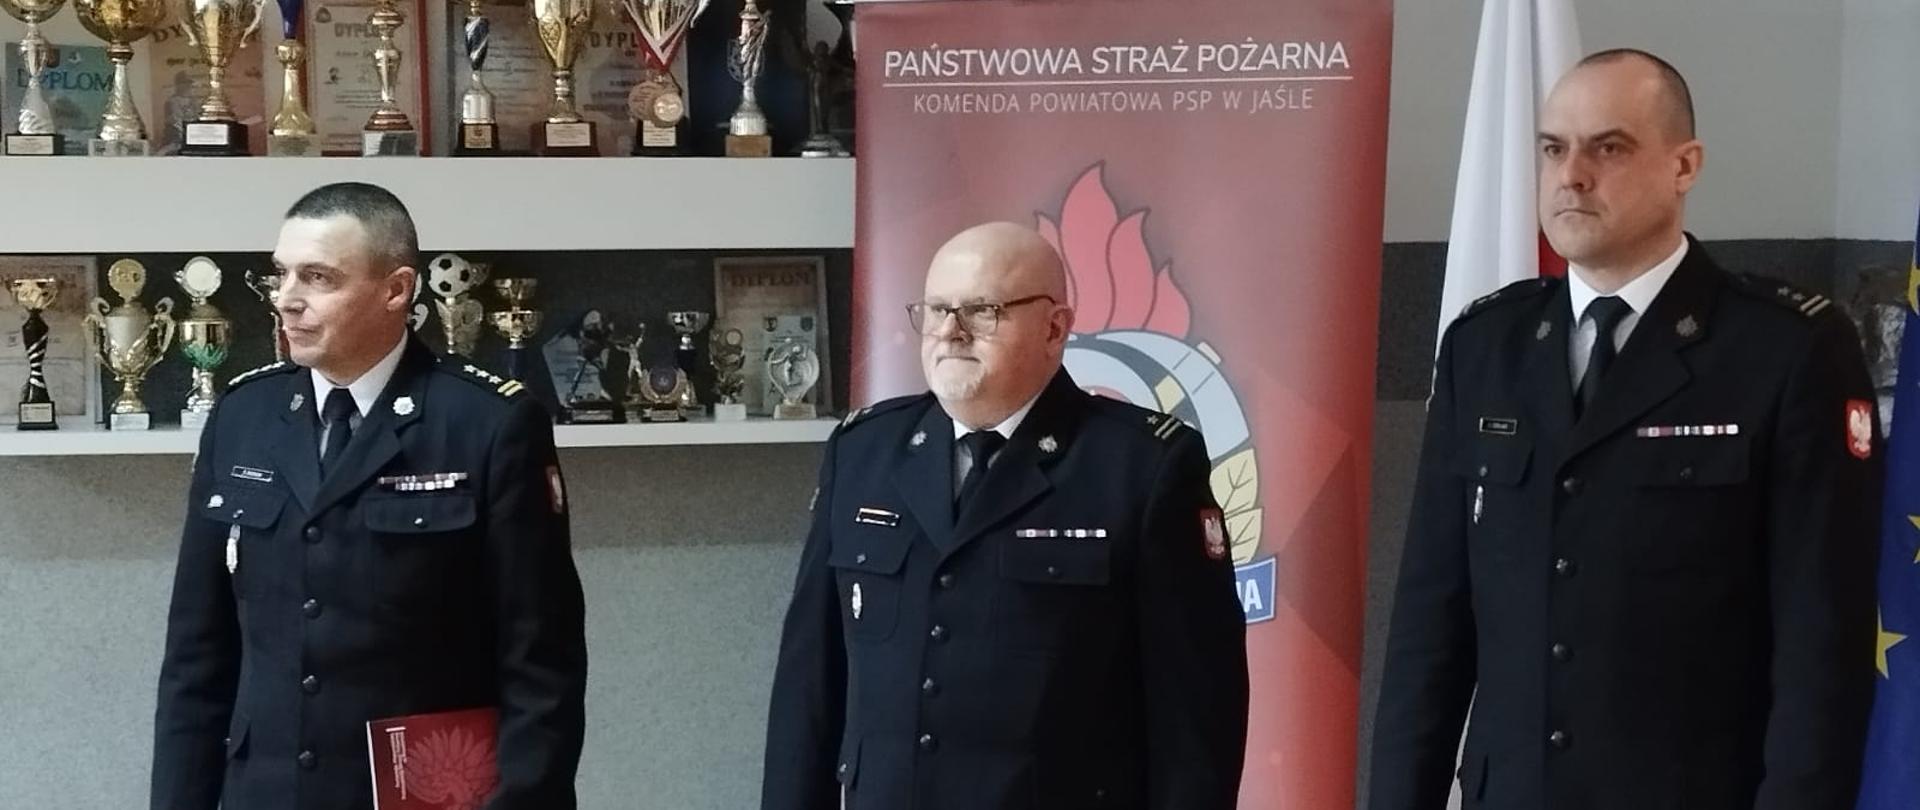 powierzenie obowiązków komendanta powiatowego PSP w Jaśle